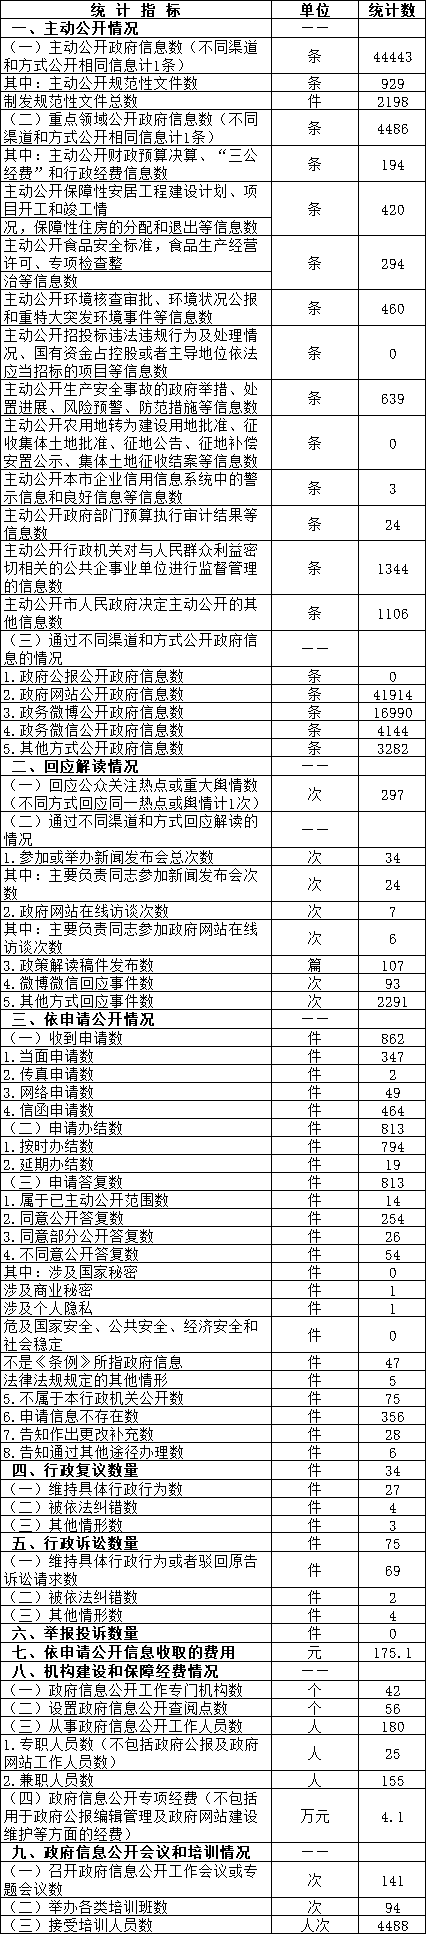 北京市丰台区人民政府信息公开情况统计表(2016年度)